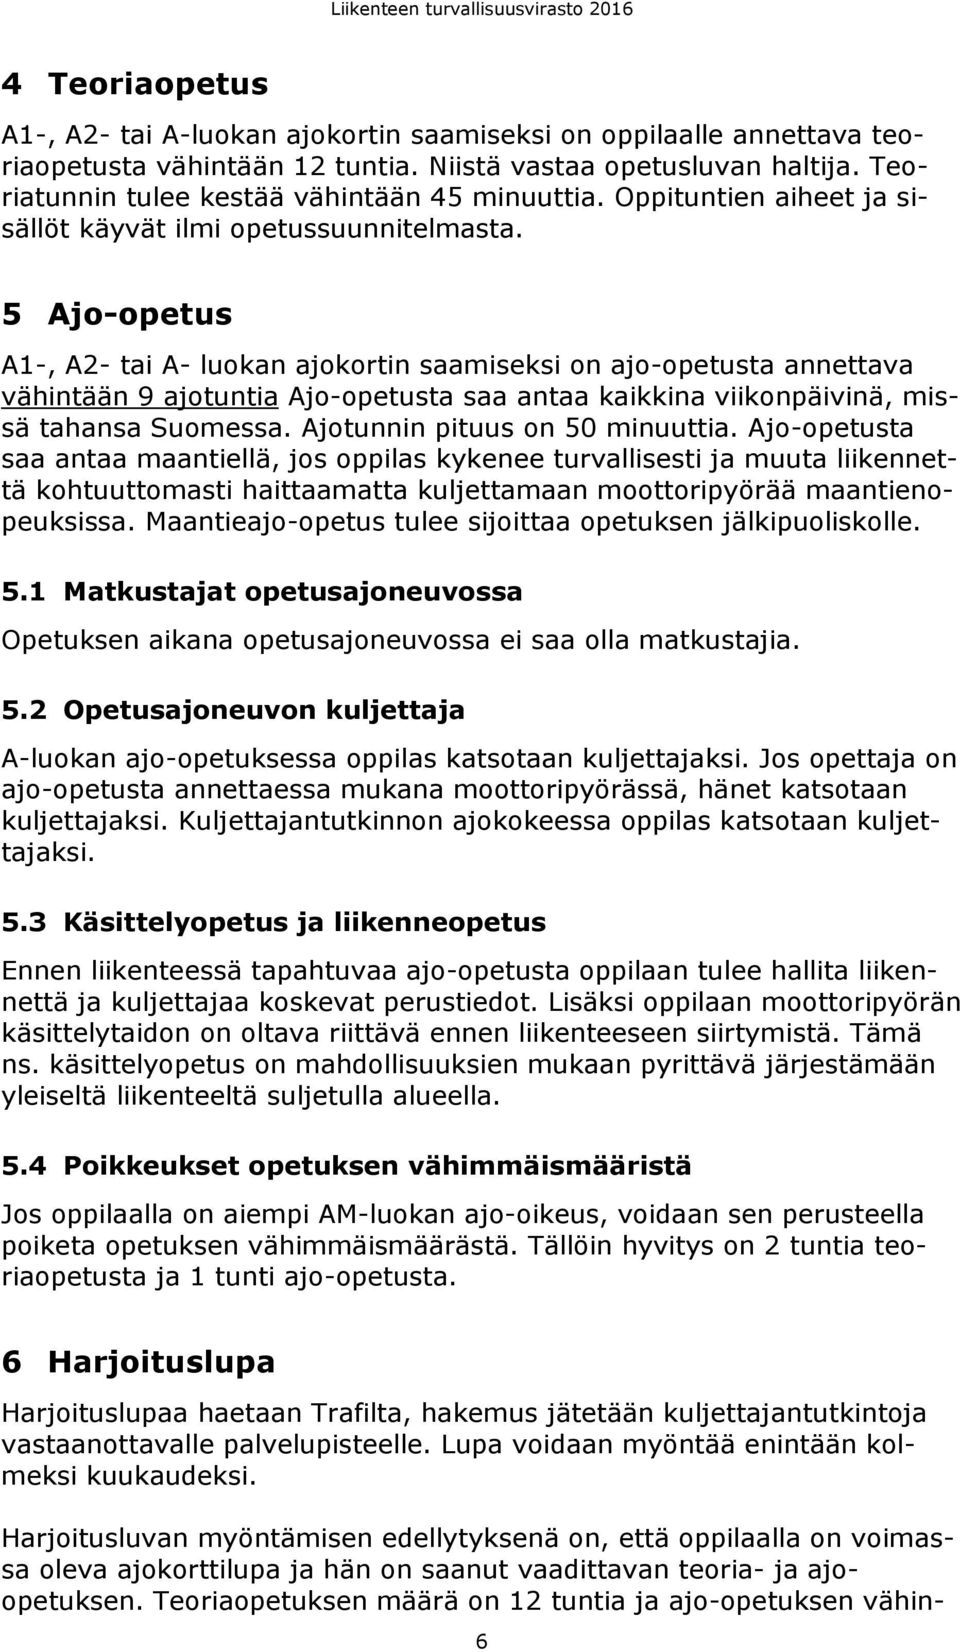 5 Ajo-opetus A1-, A2- tai A- luokan ajokortin saamiseksi on ajo-opetusta annettava vähintään 9 ajotuntia Ajo-opetusta saa antaa kaikkina viikonpäivinä, missä tahansa Suomessa.